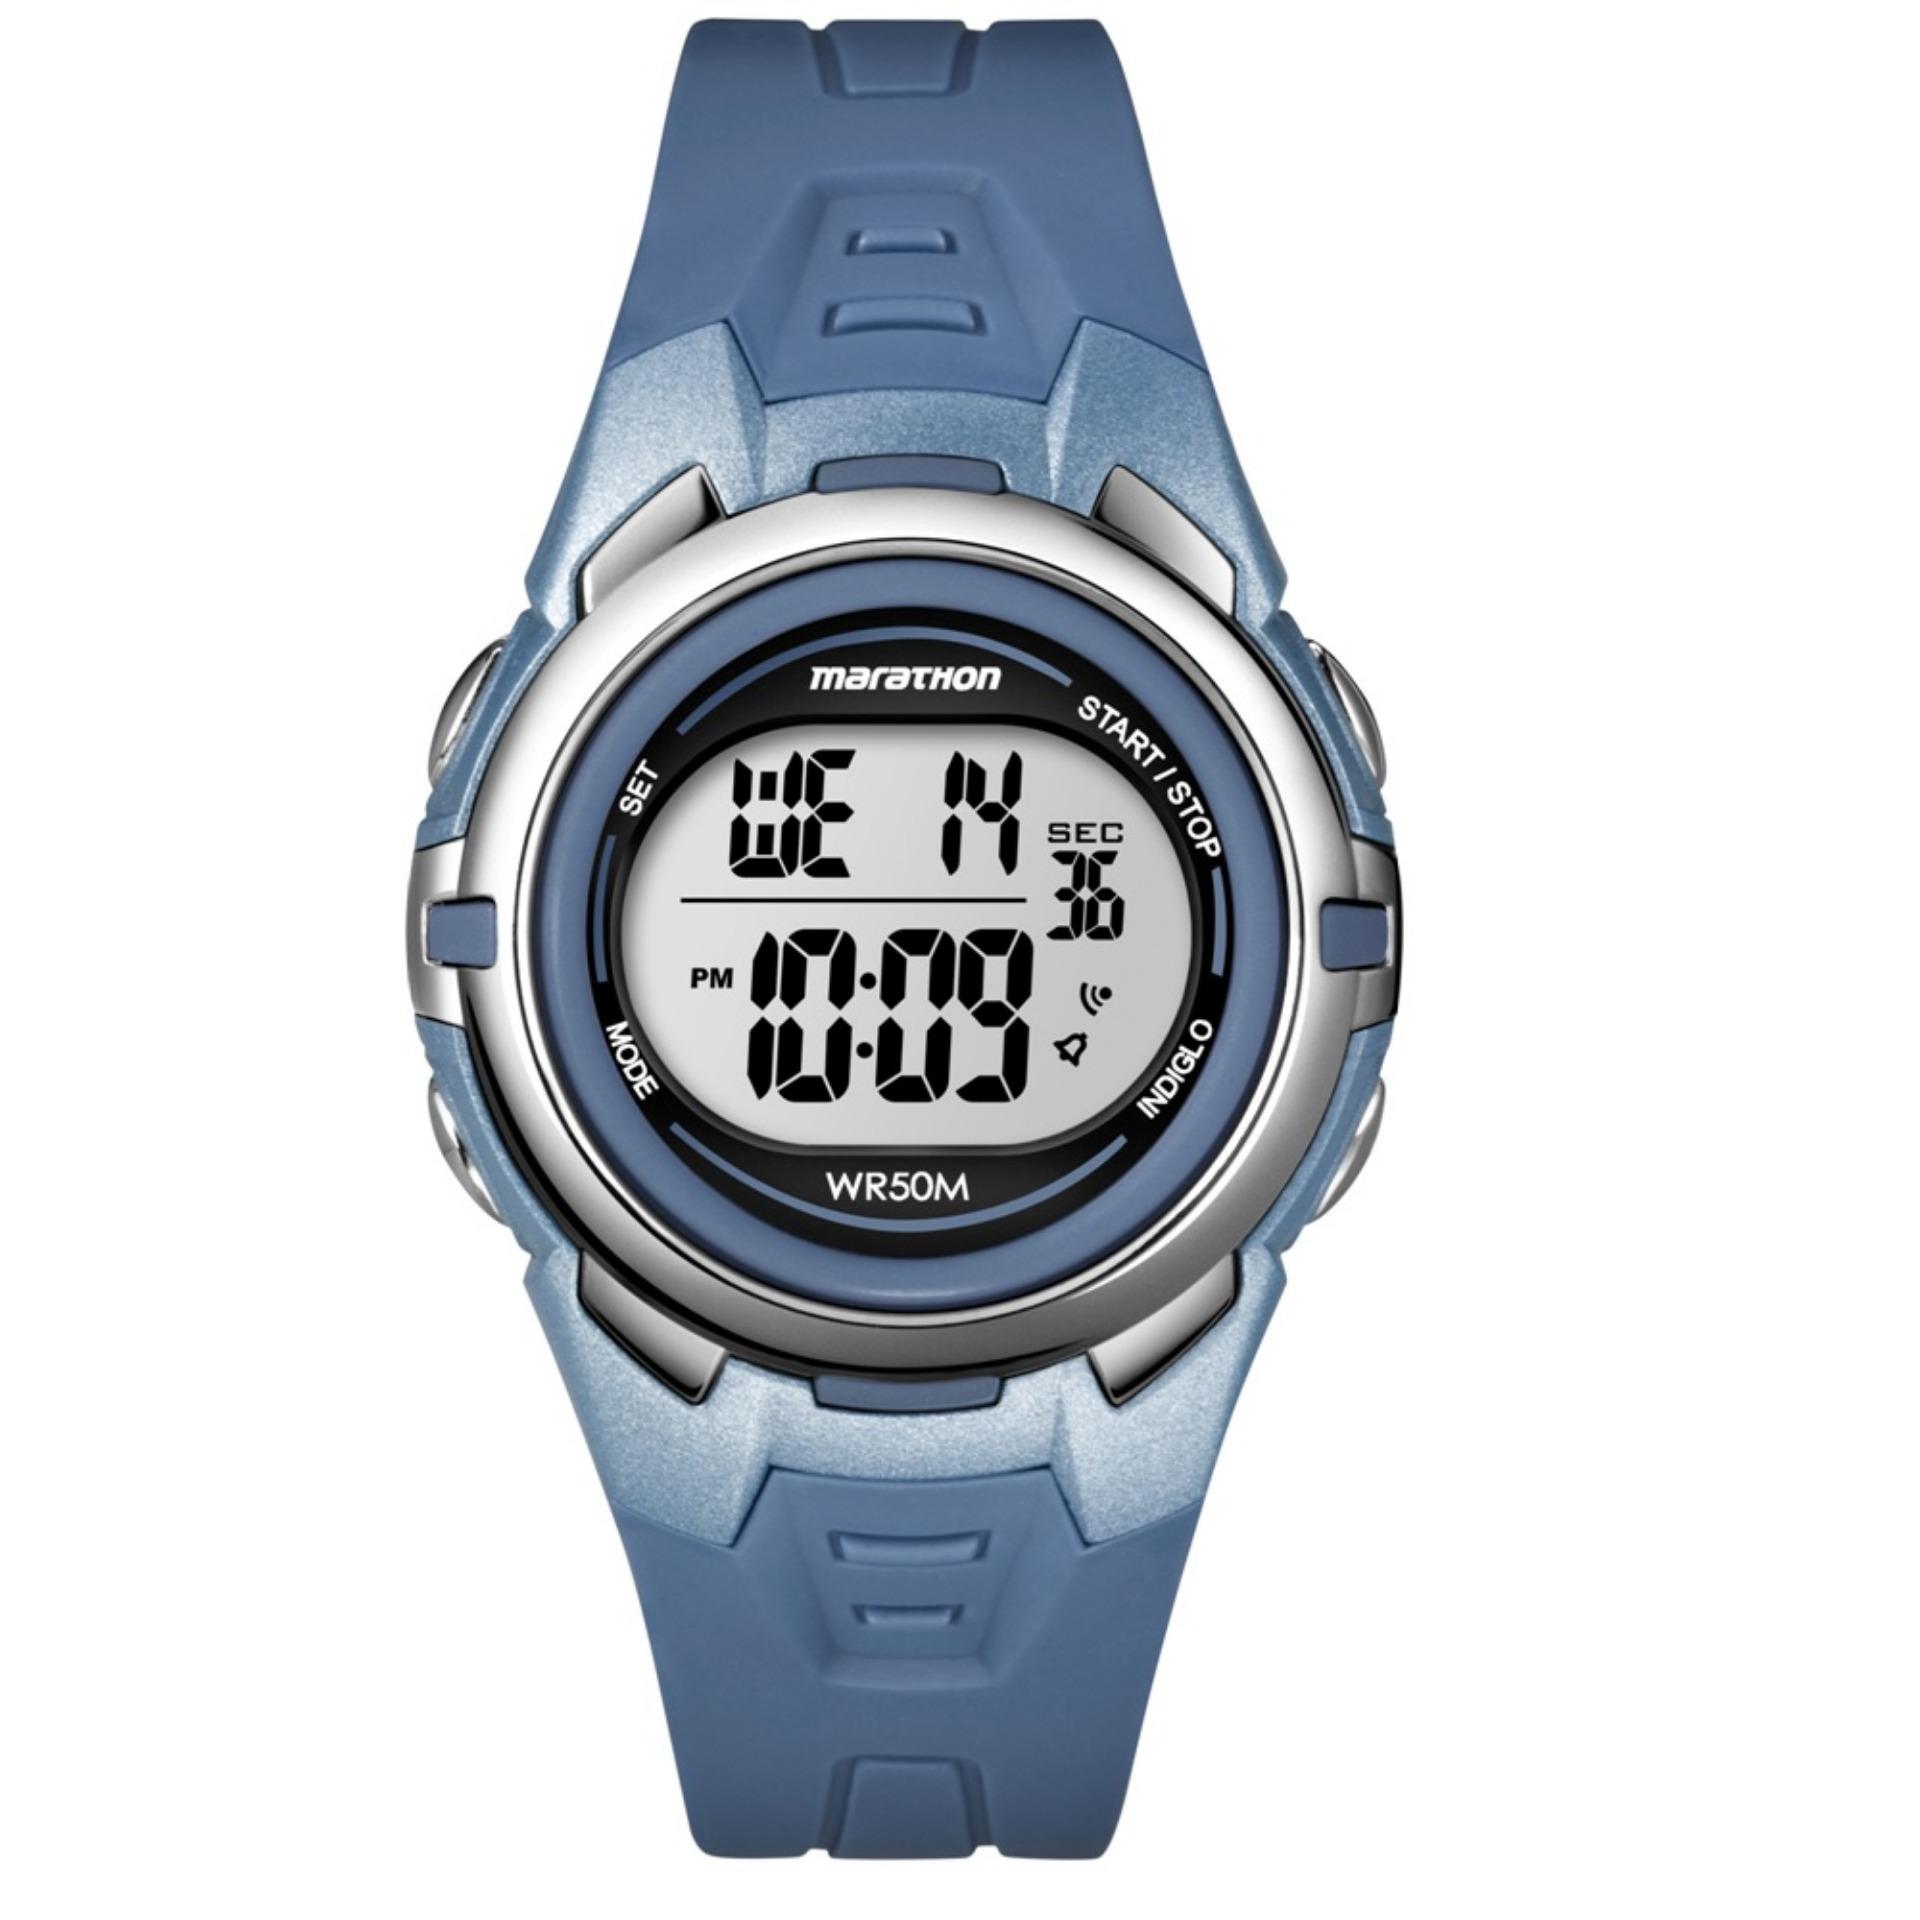 Marathon Digital Watch Instructions Wr50m - Digital Photos and ...